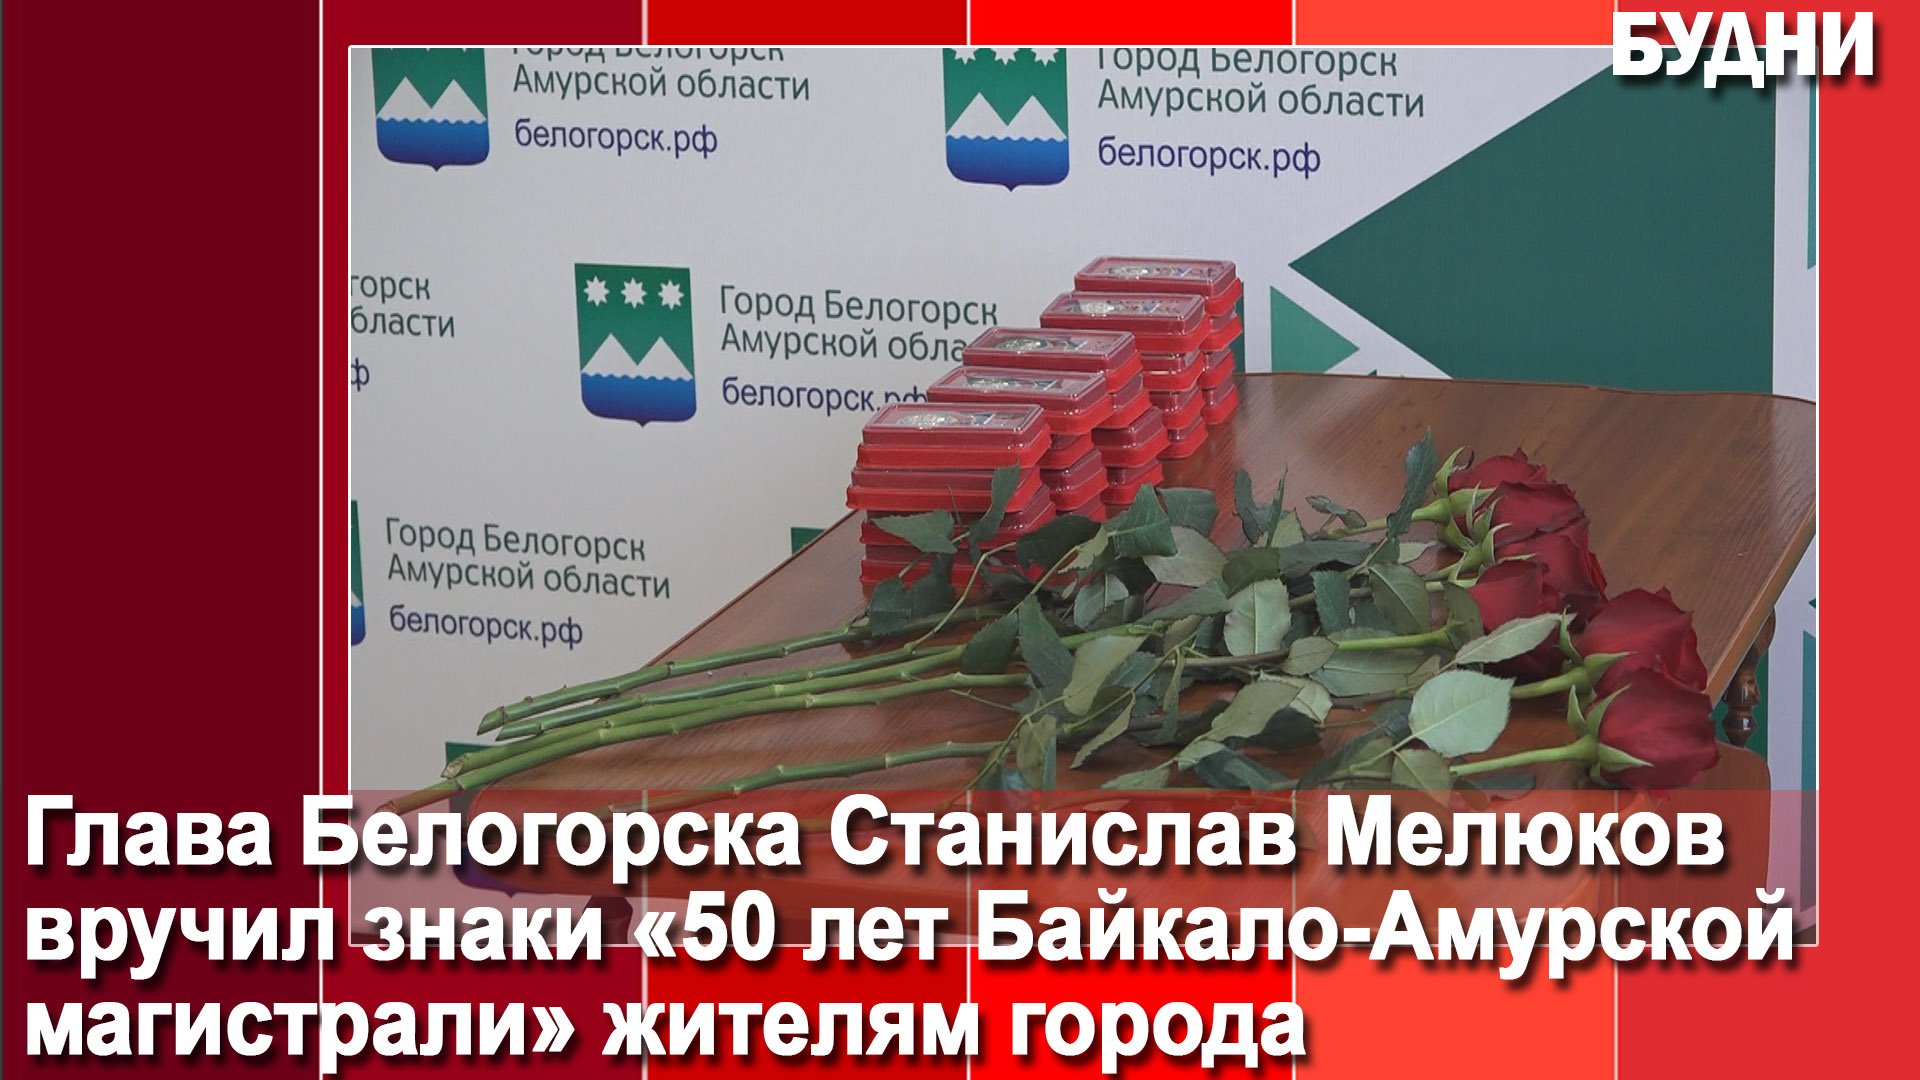 Глава Белогорска вручил знаки «50 лет Байкало-амурской магистрали»